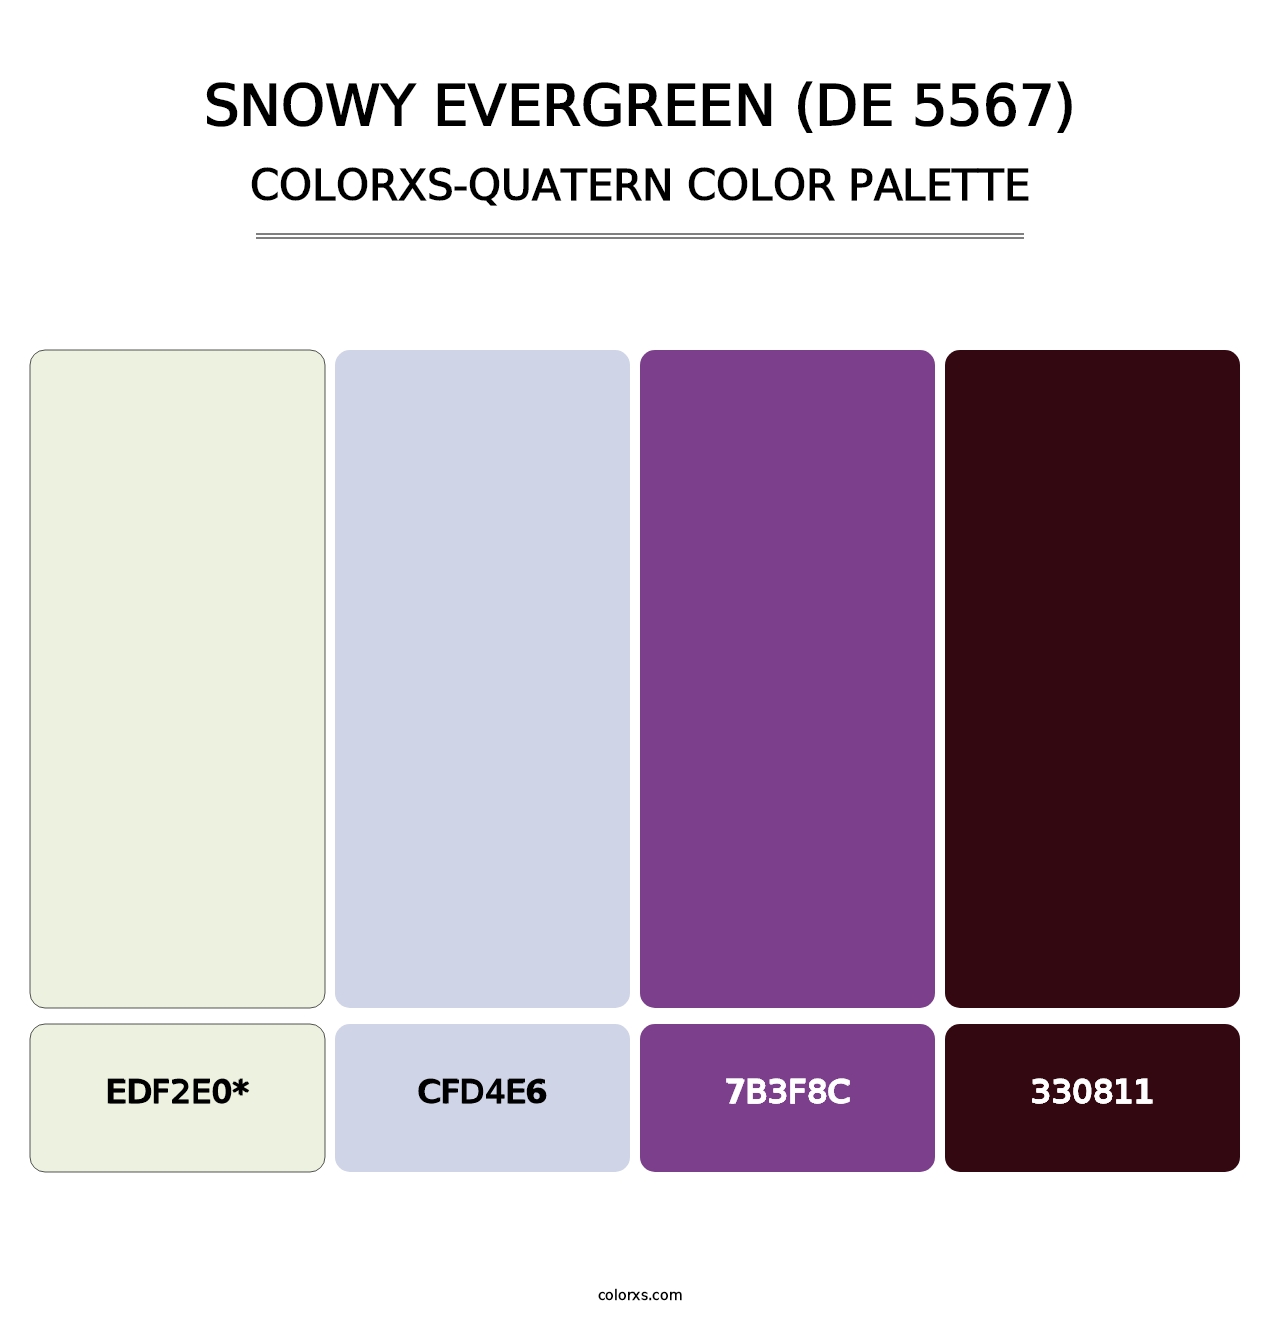 Snowy Evergreen (DE 5567) - Colorxs Quatern Palette